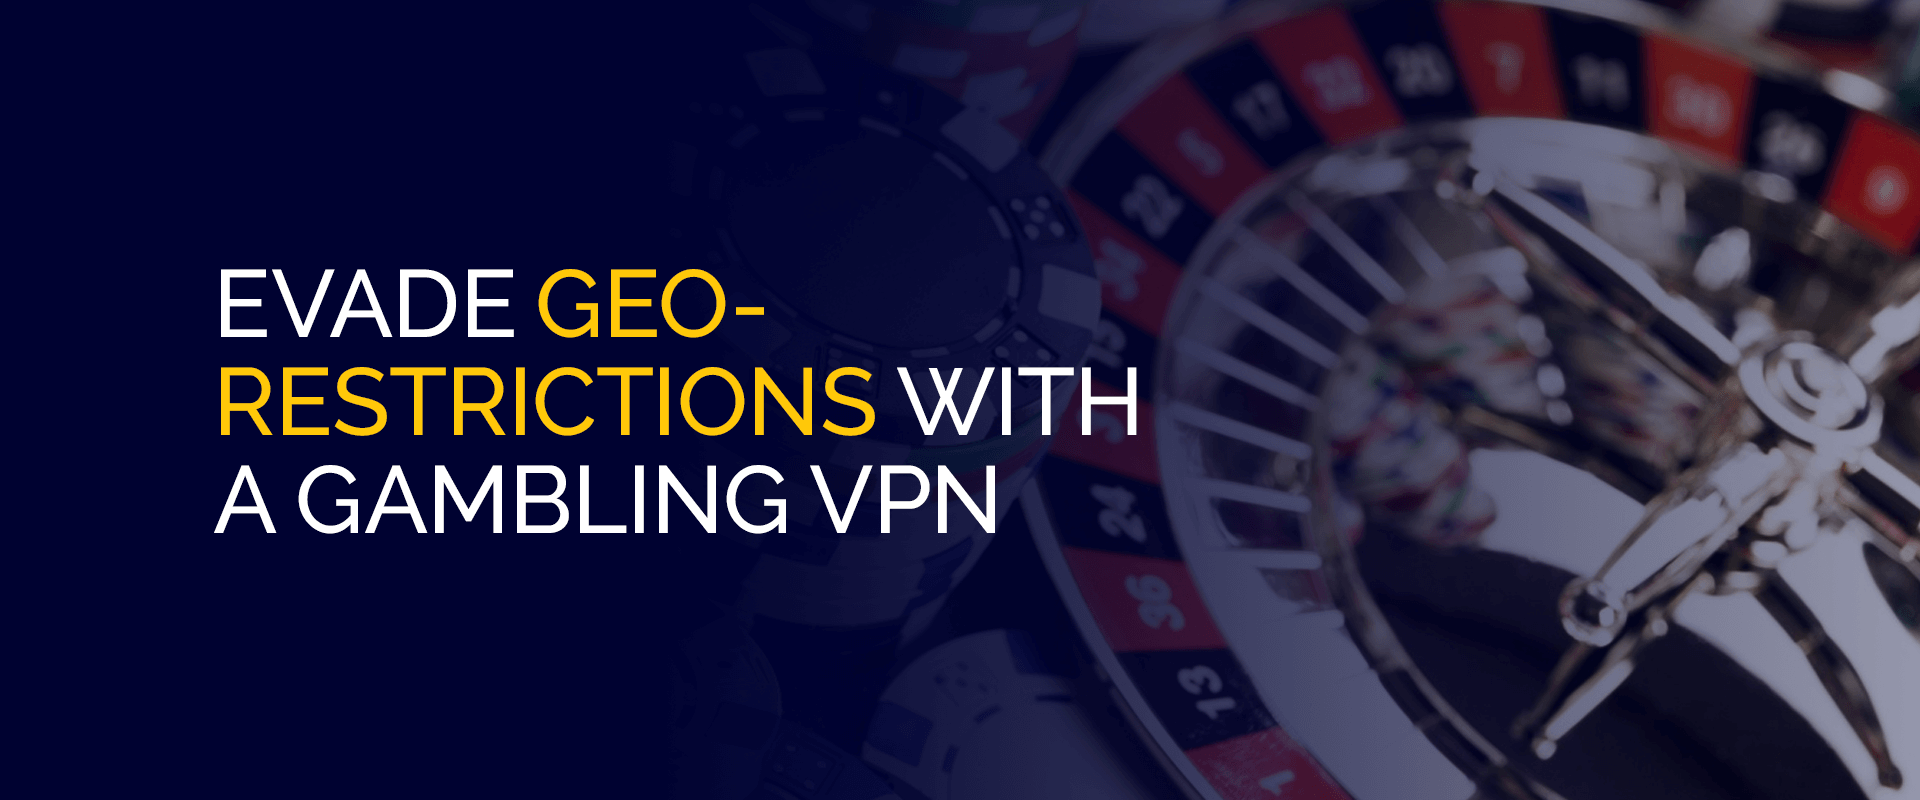 使用赌博 VPN 规避地理限制